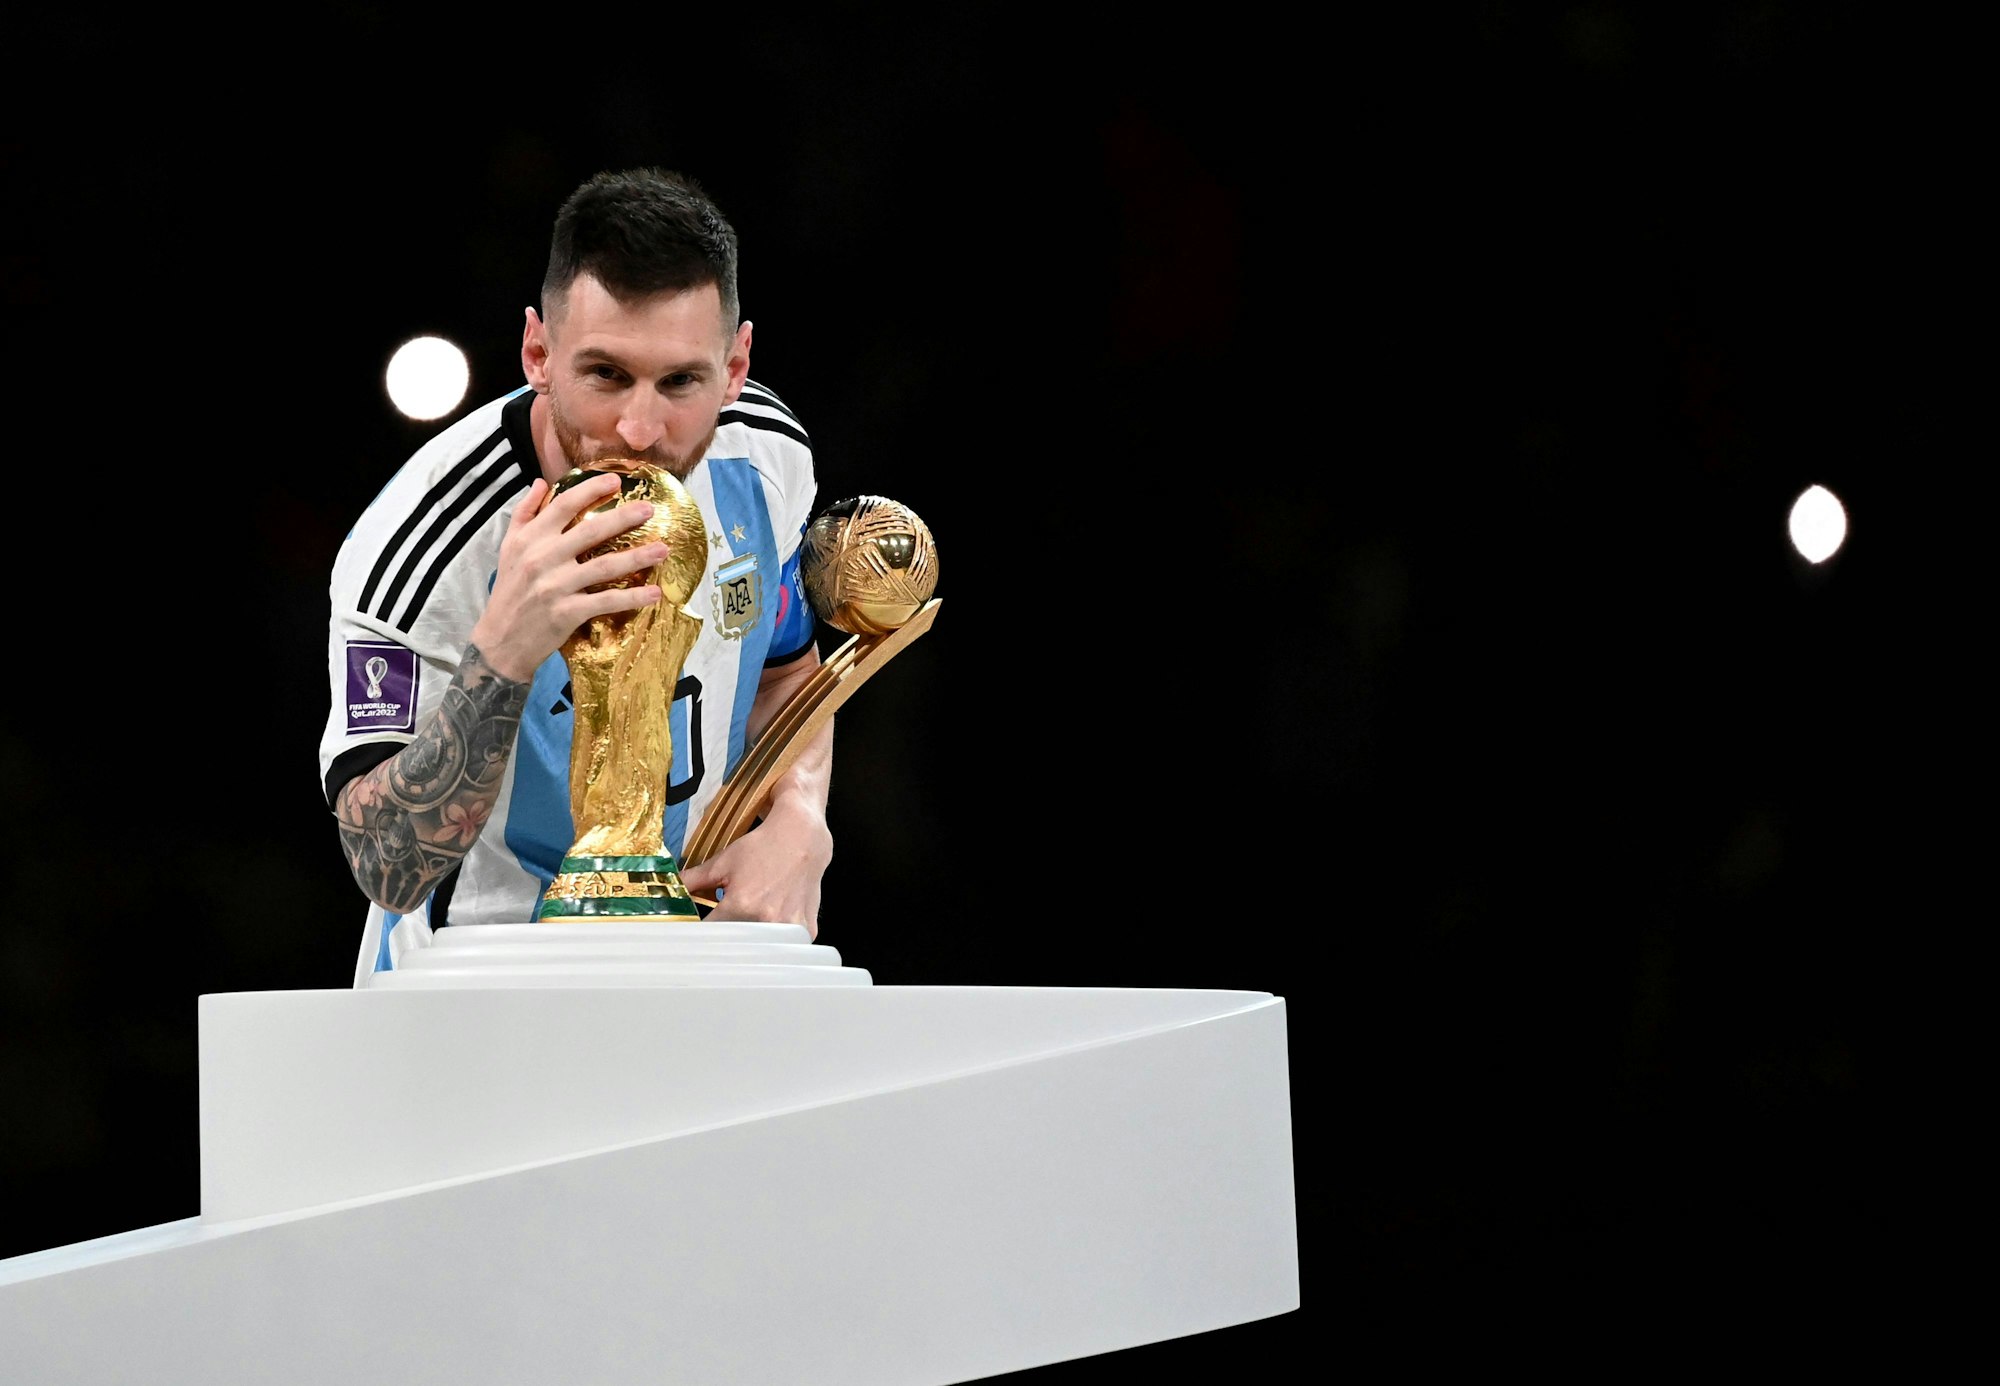 Lionel Messi küsst den WM-Pokal.